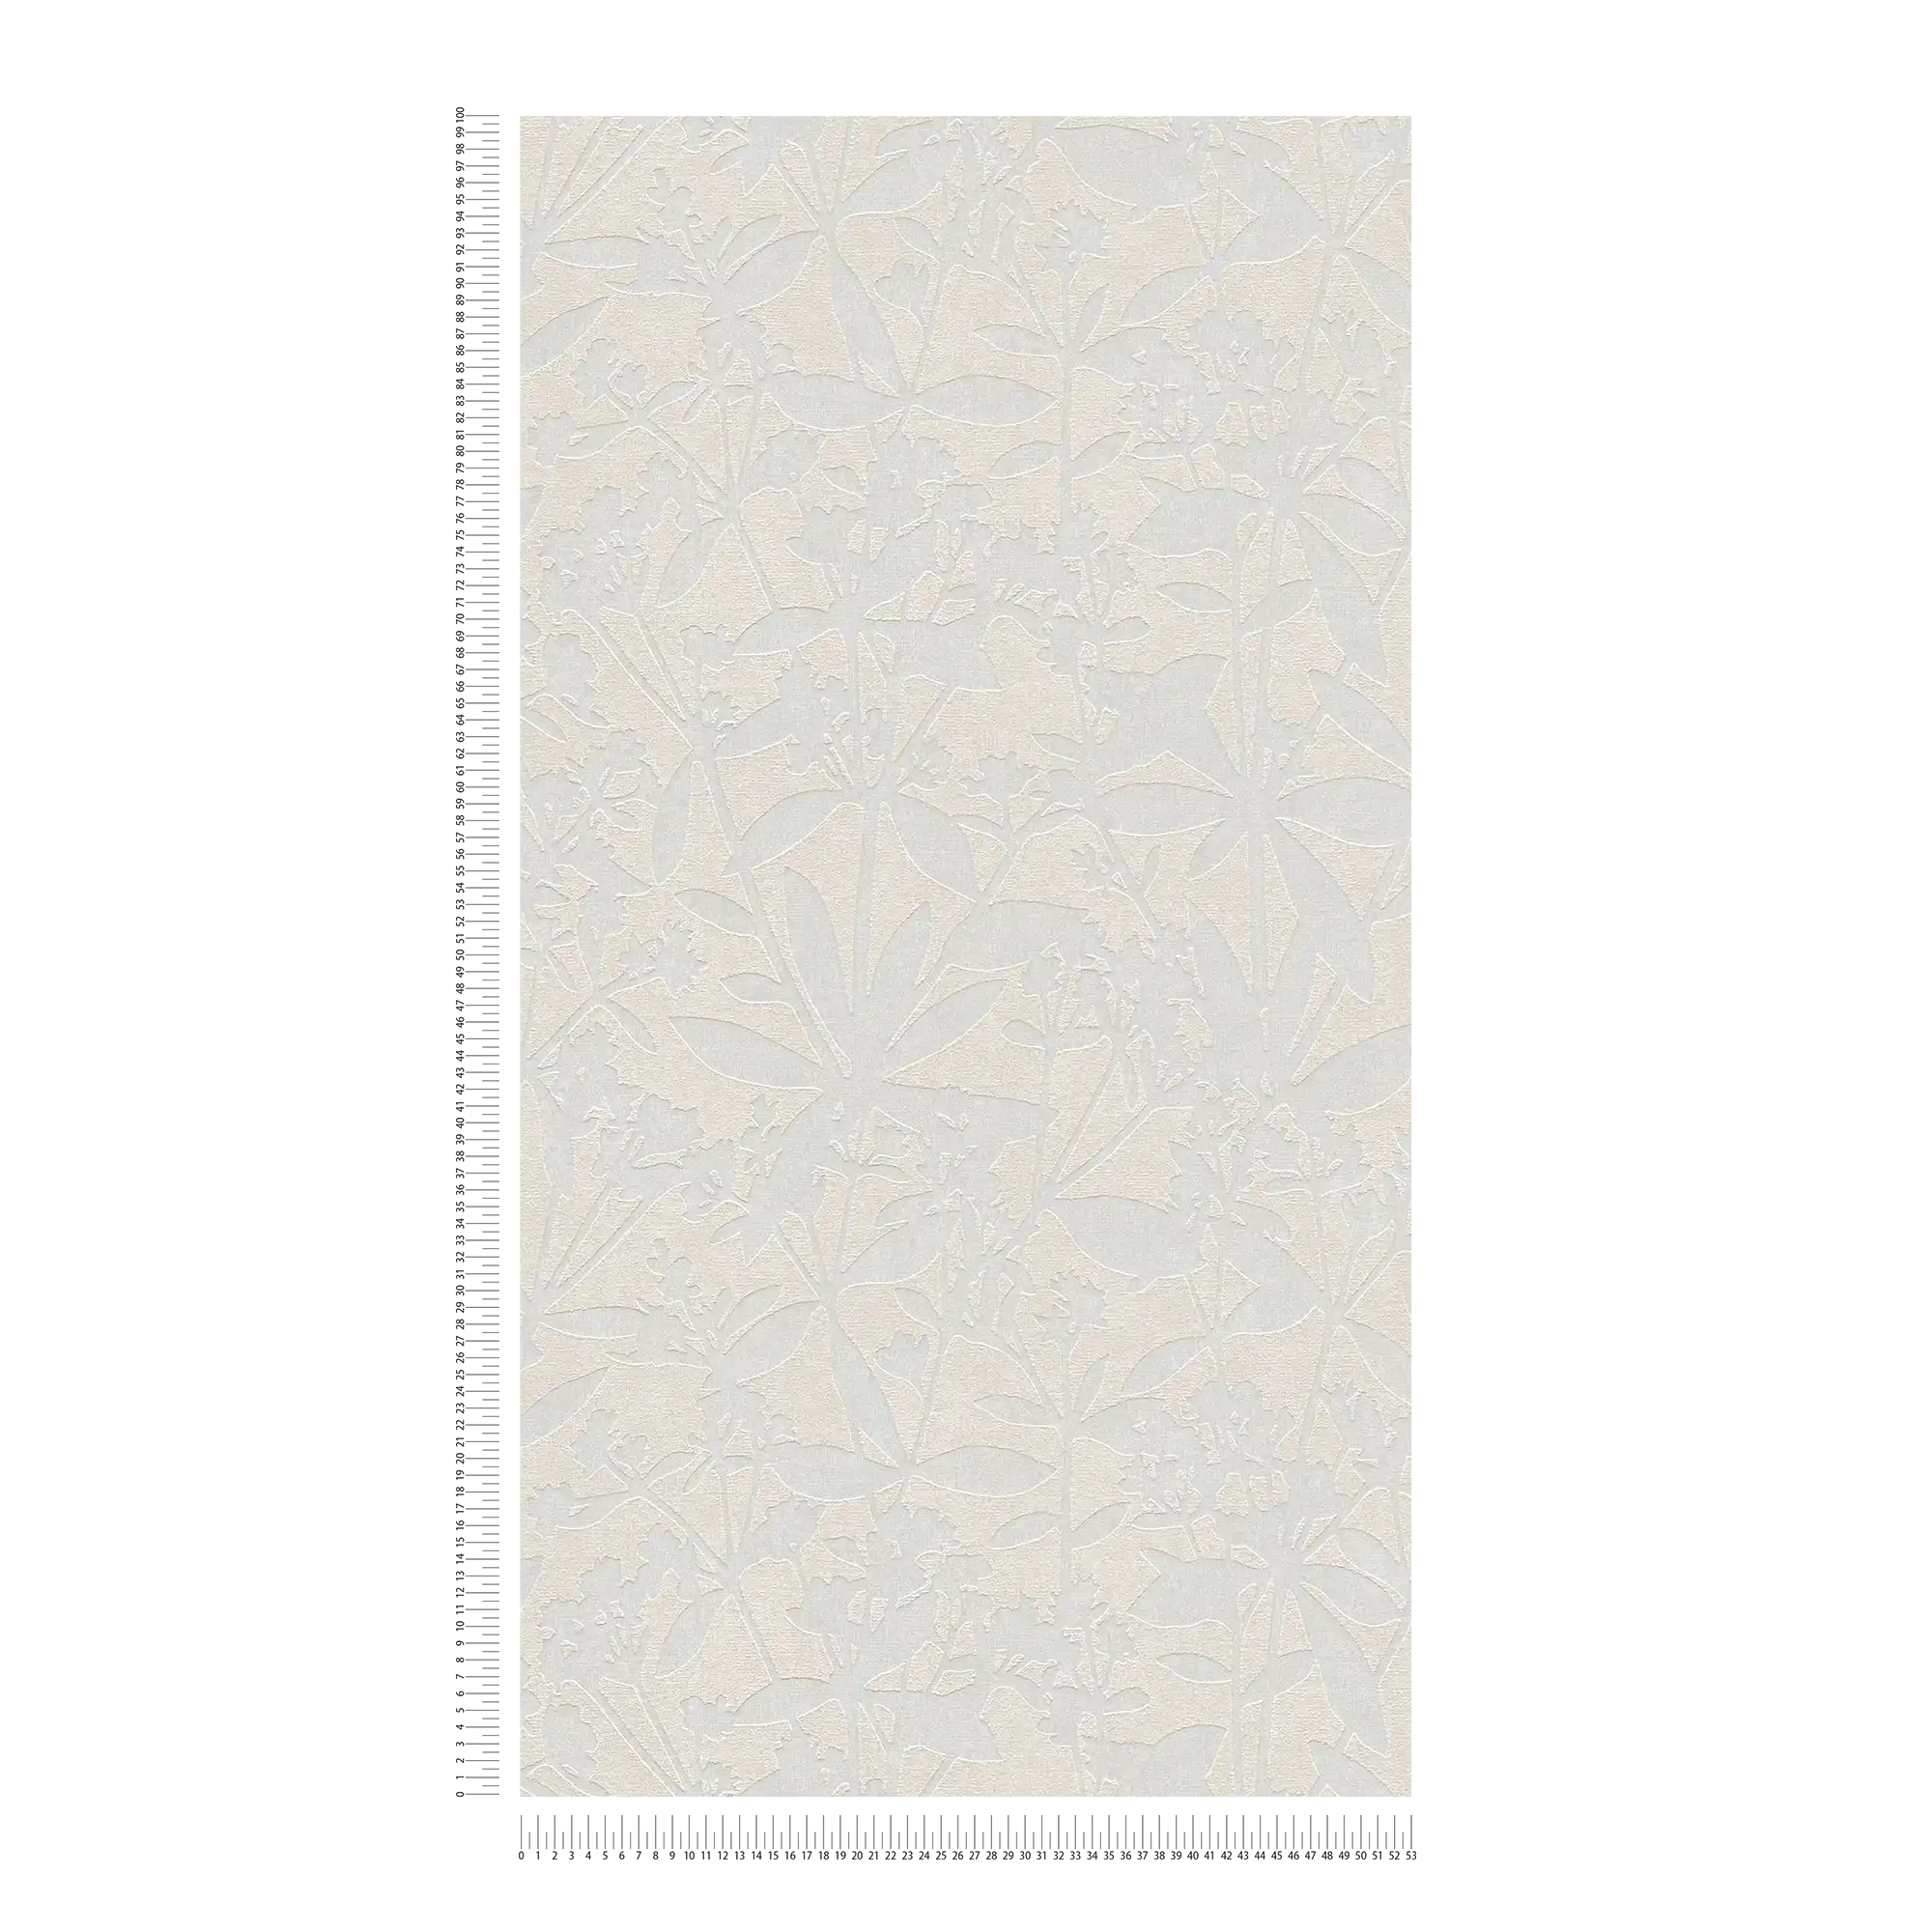             Florale Vliestapete mit Blumen Strukturmuster – Creme, Weiß
        